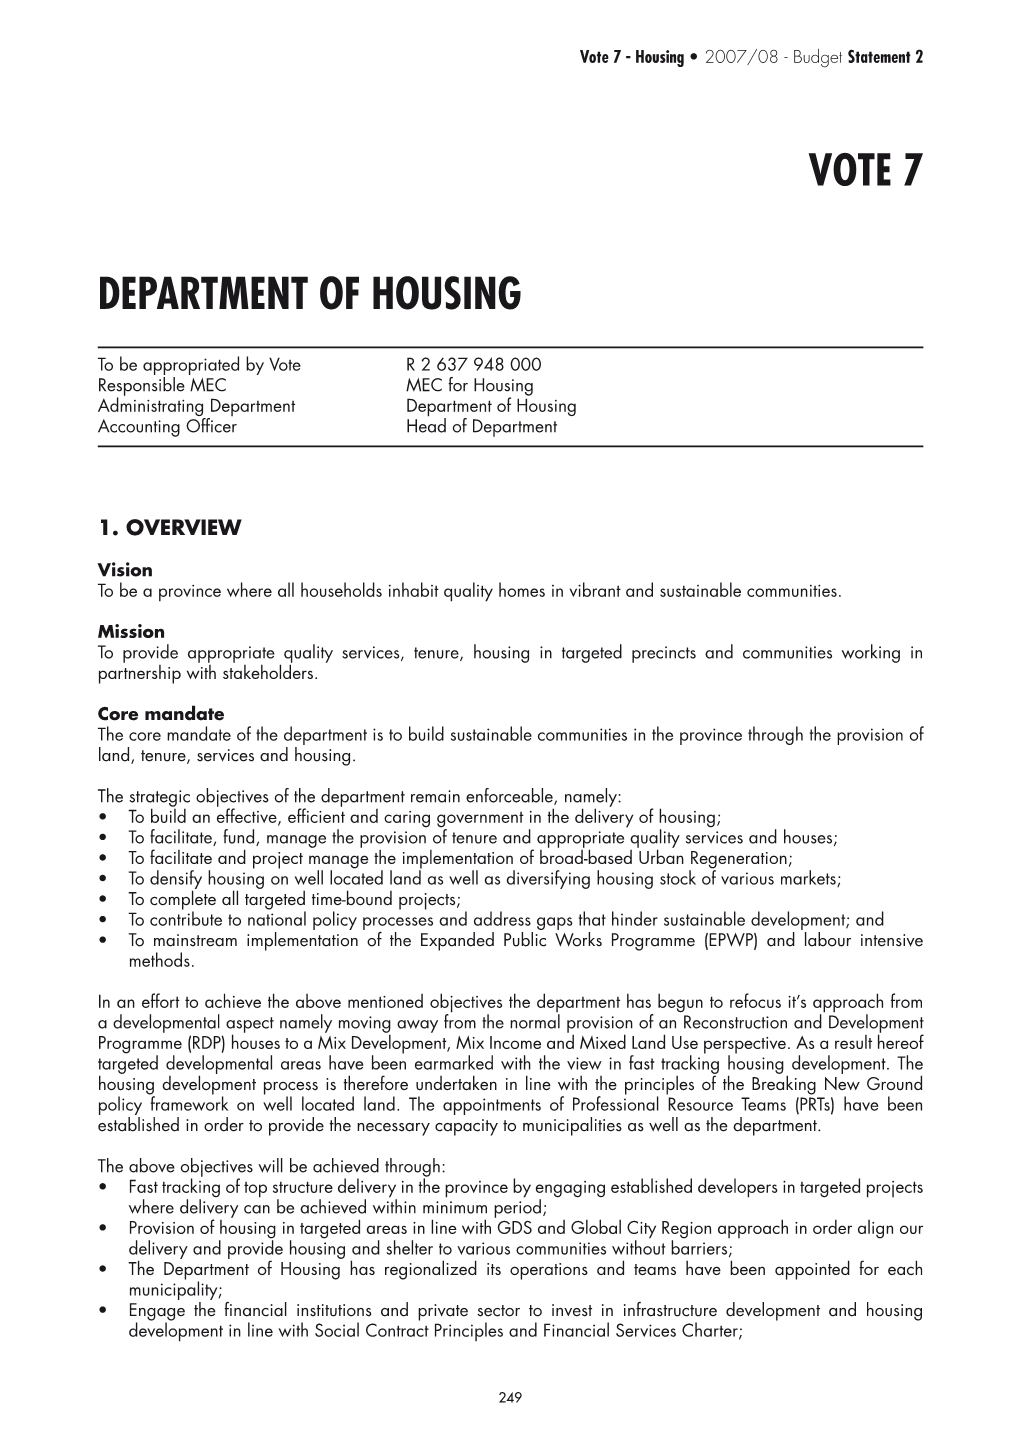 Housing • 2007/08 - Budget Statement 2